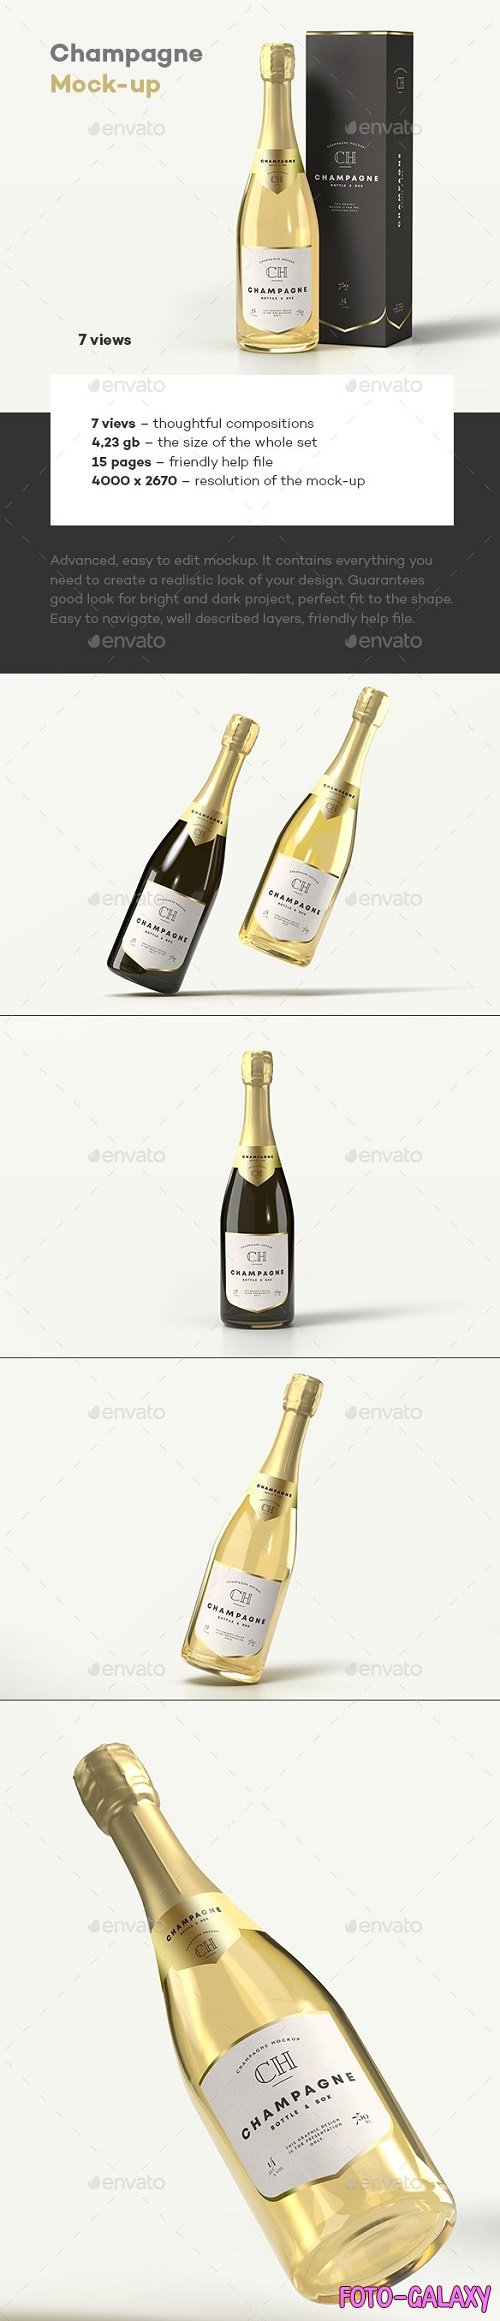 Champagne Bottle Mock-up - 33684444